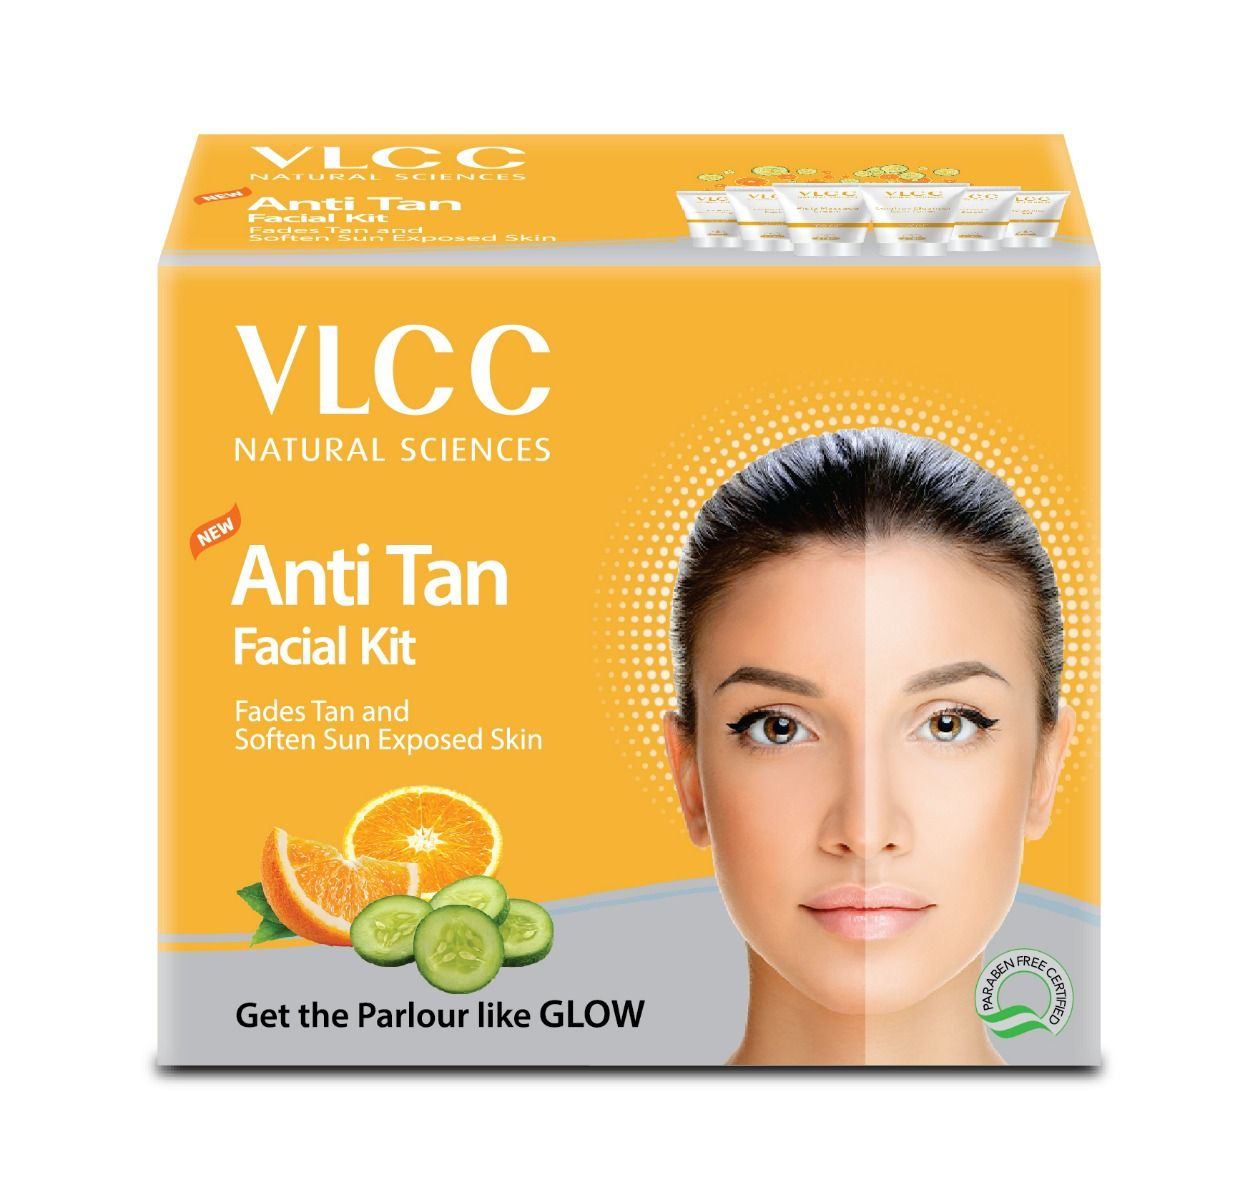 Buy VLCC New Anti Tan Facial Kit, 1 Count Online